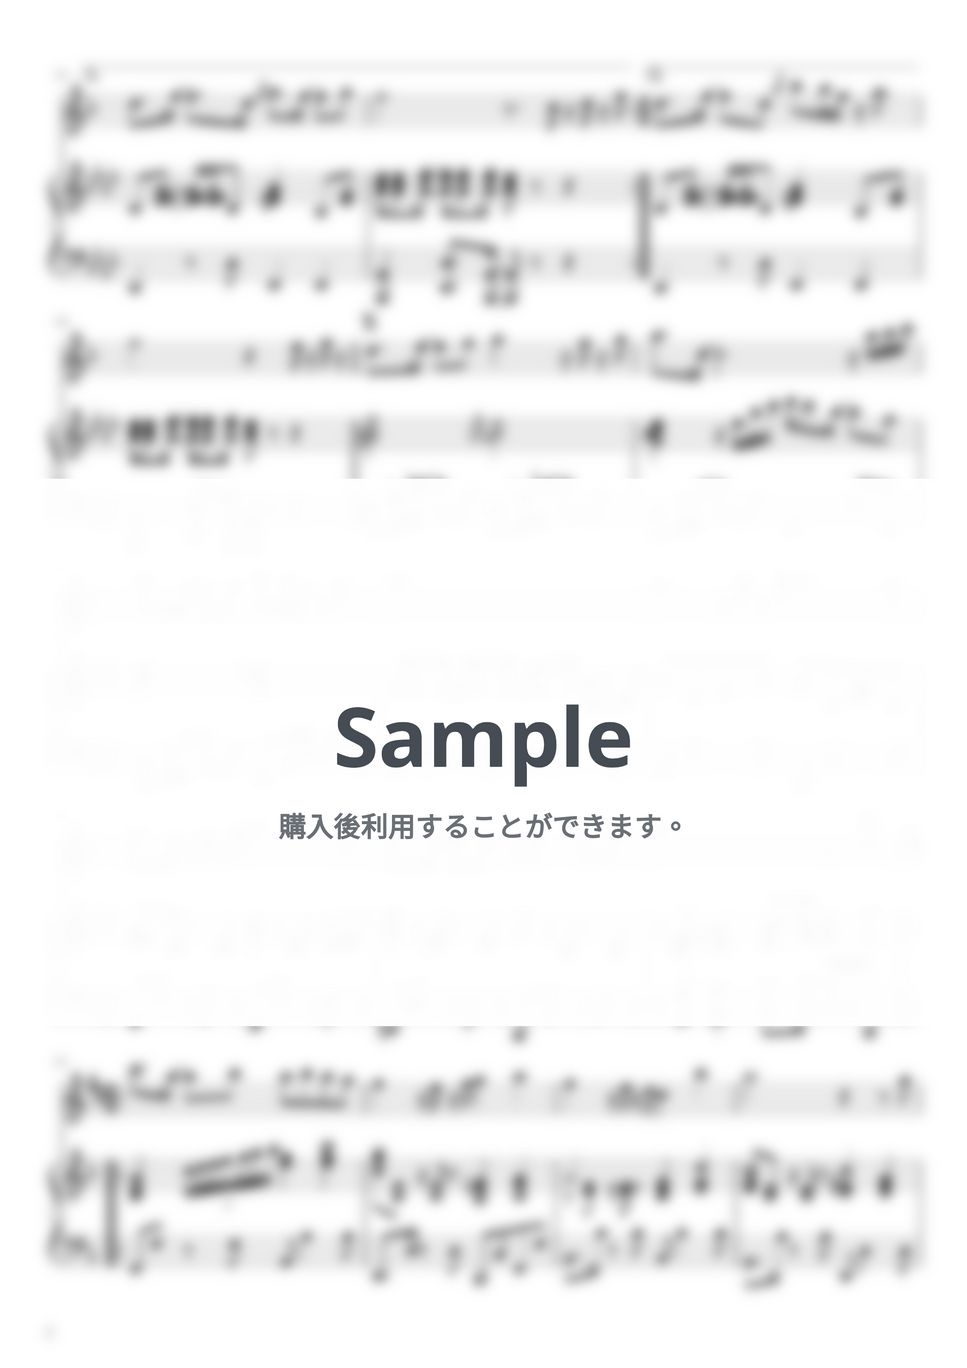 T-SQUARE - 宝島 (ピアノ伴奏 / 吹奏楽バージョン / inE♭) by さく山P